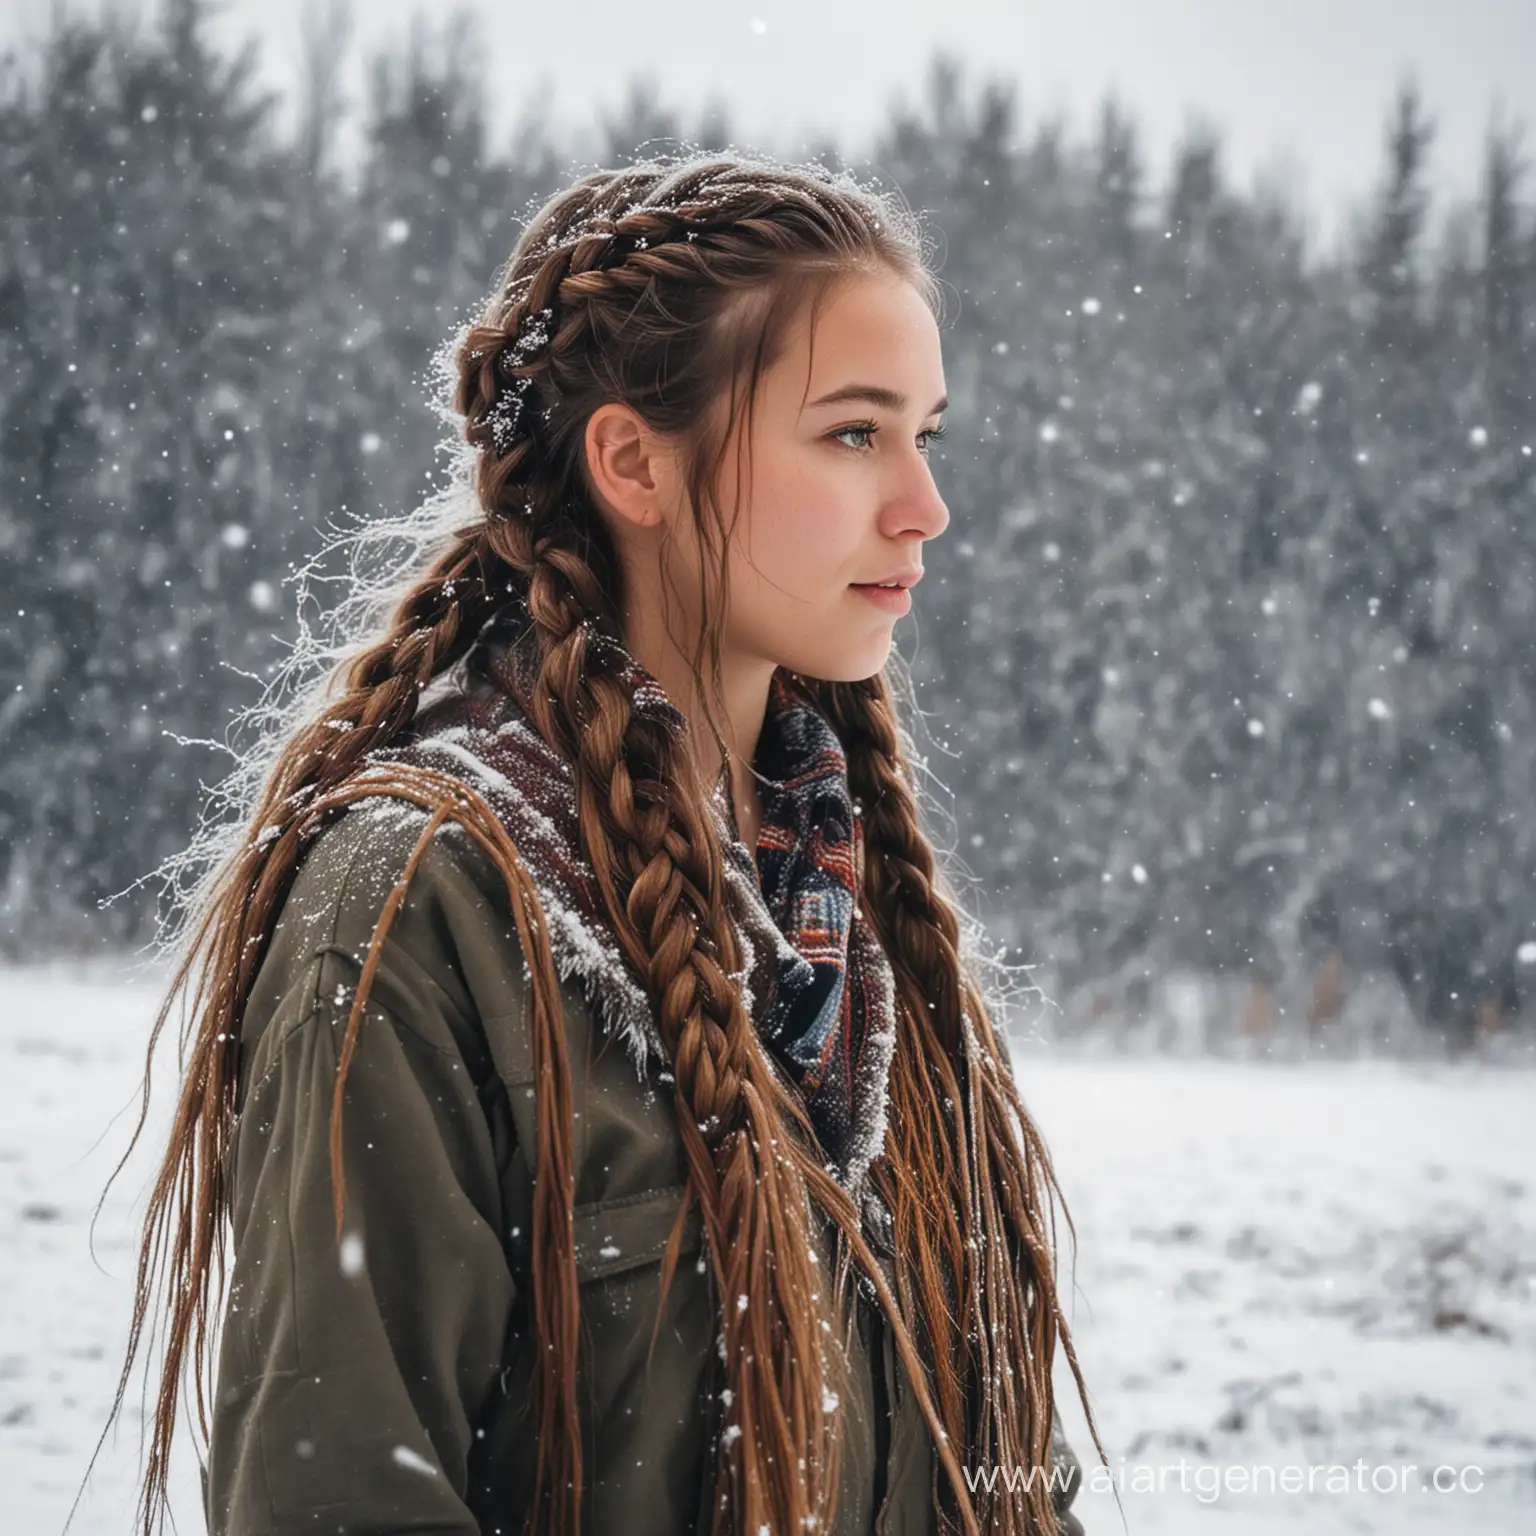 взрослая девушка с длинной косой из северного дикого народа, младший брат, лохматый, играют в снегу, дикий северный народ